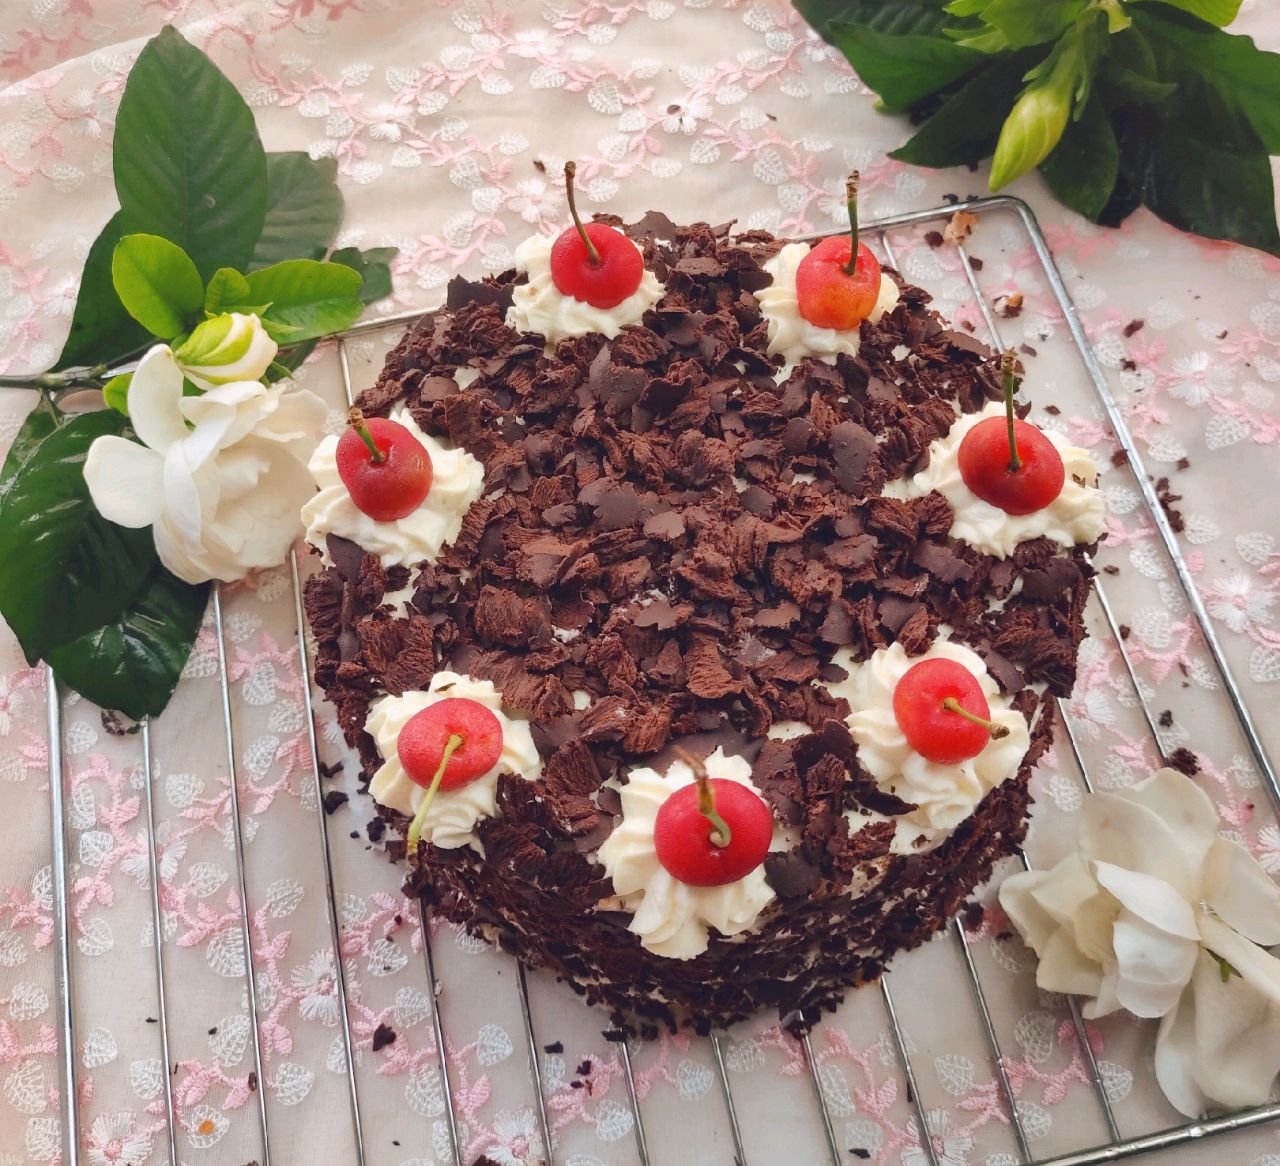 日本长崎黑森林蛋糕怎么做_日本长崎黑森林蛋糕的做法_曼思欢乐厨房_豆果美食